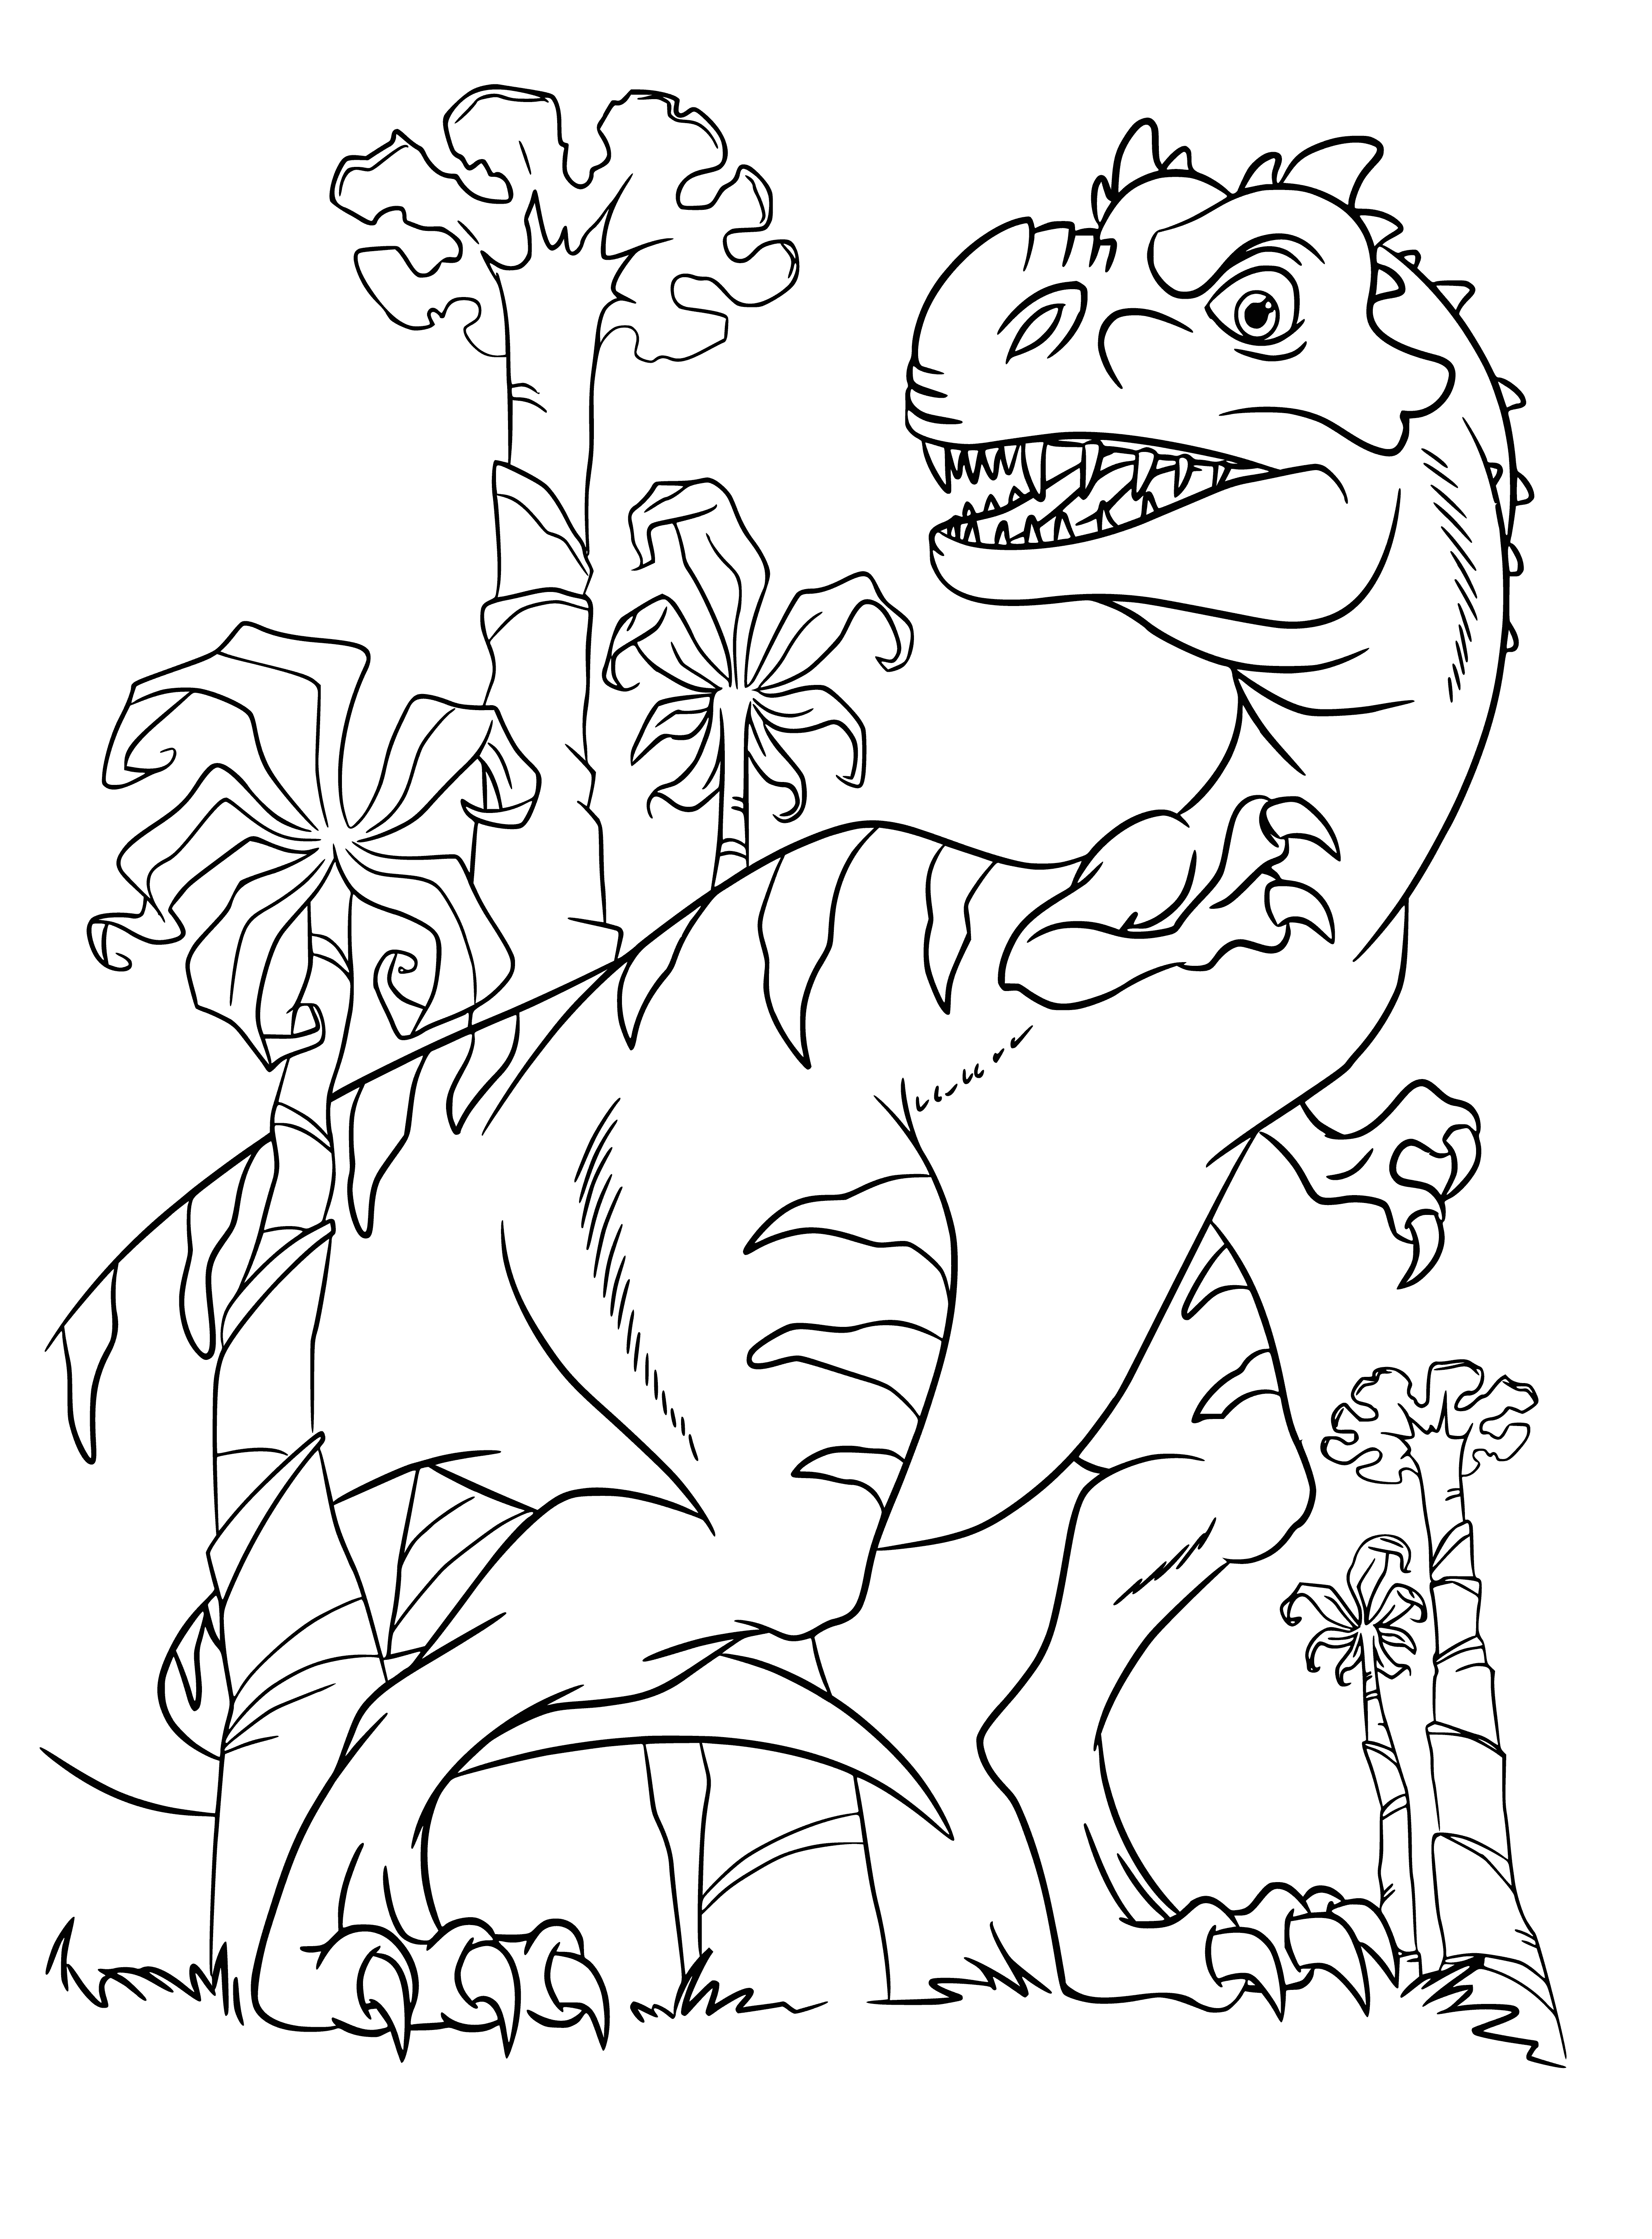 Раскраска динозавр формат а4. Раскраски Ледниковый период 3 Эра динозавров. Динозавры / раскраска. Динозавры для раскрашивания детям. Динозавр раскраска для детей.